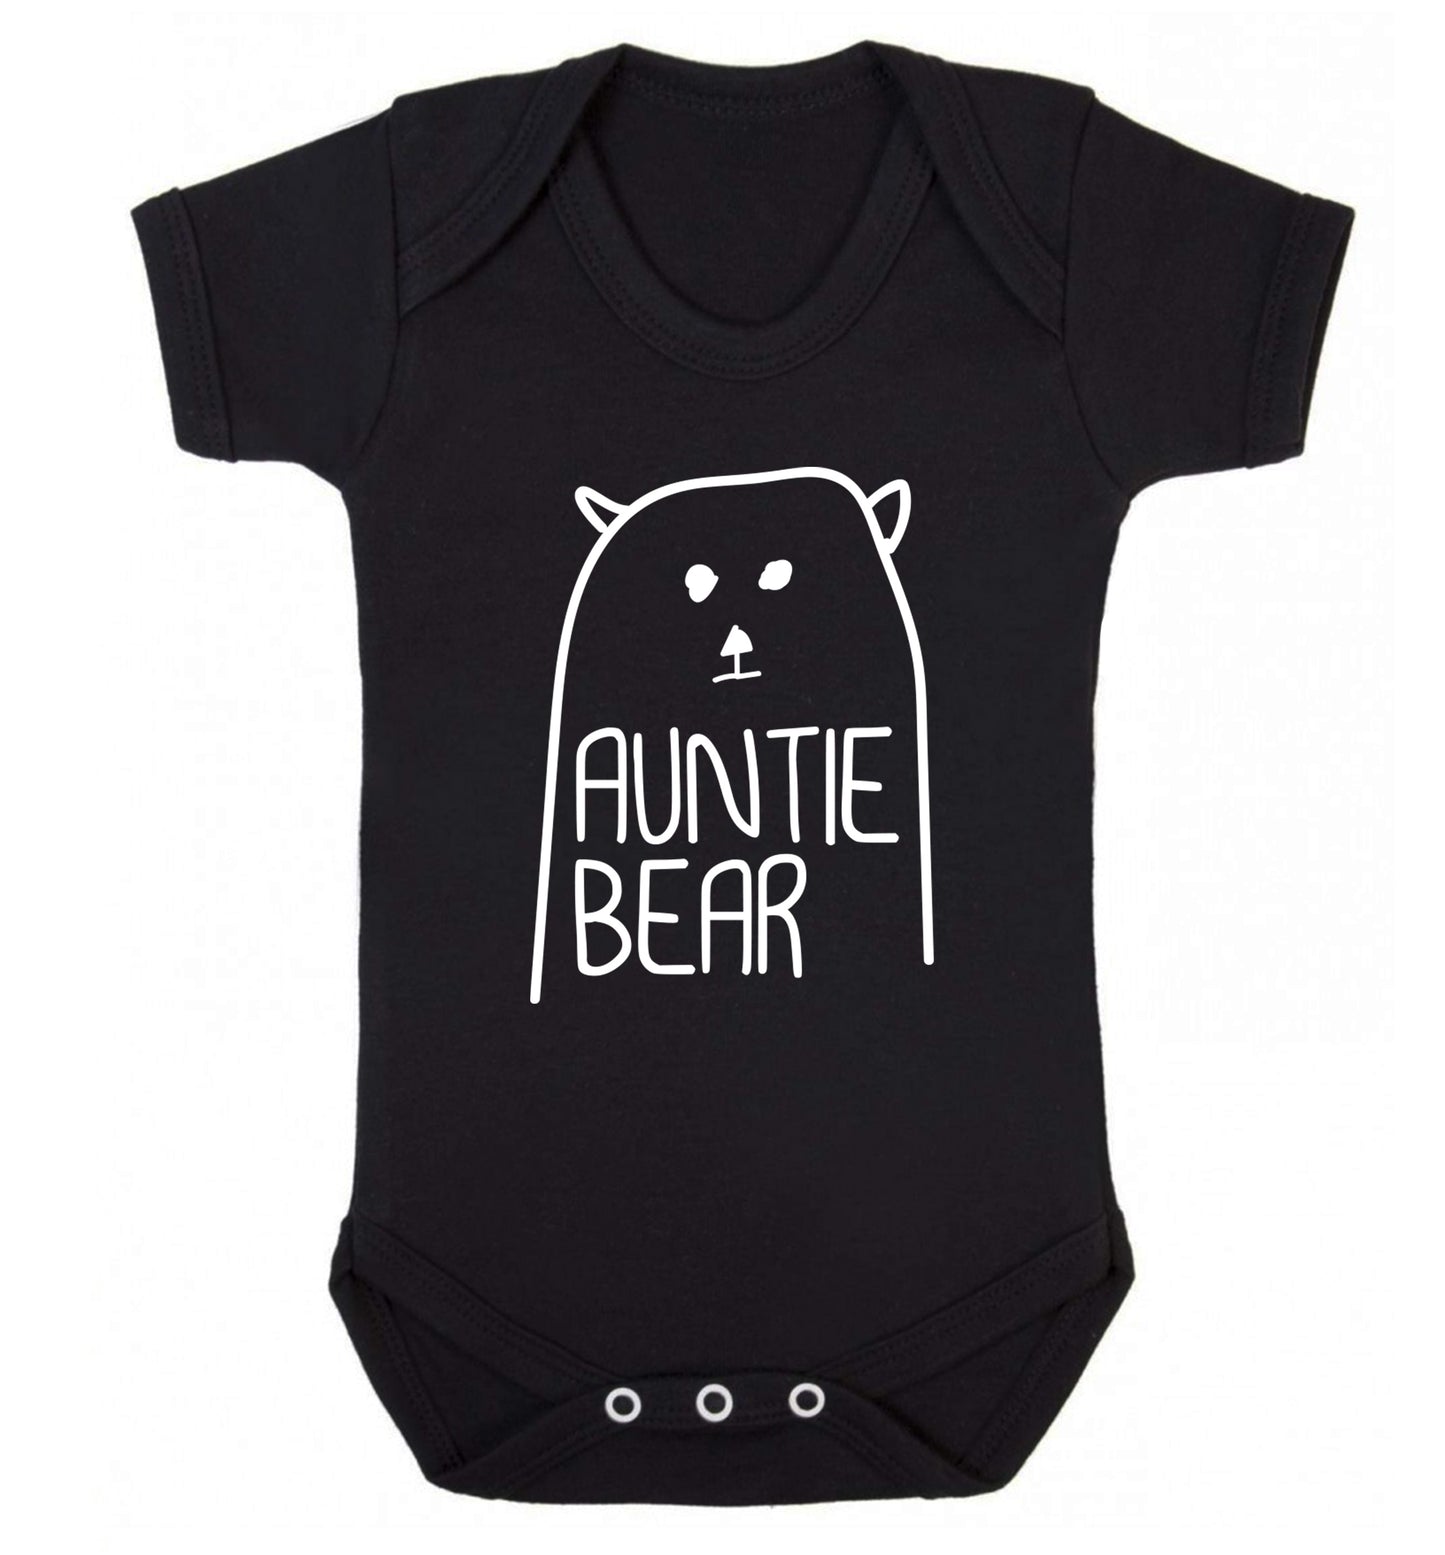 Auntie bear Baby Vest black 18-24 months